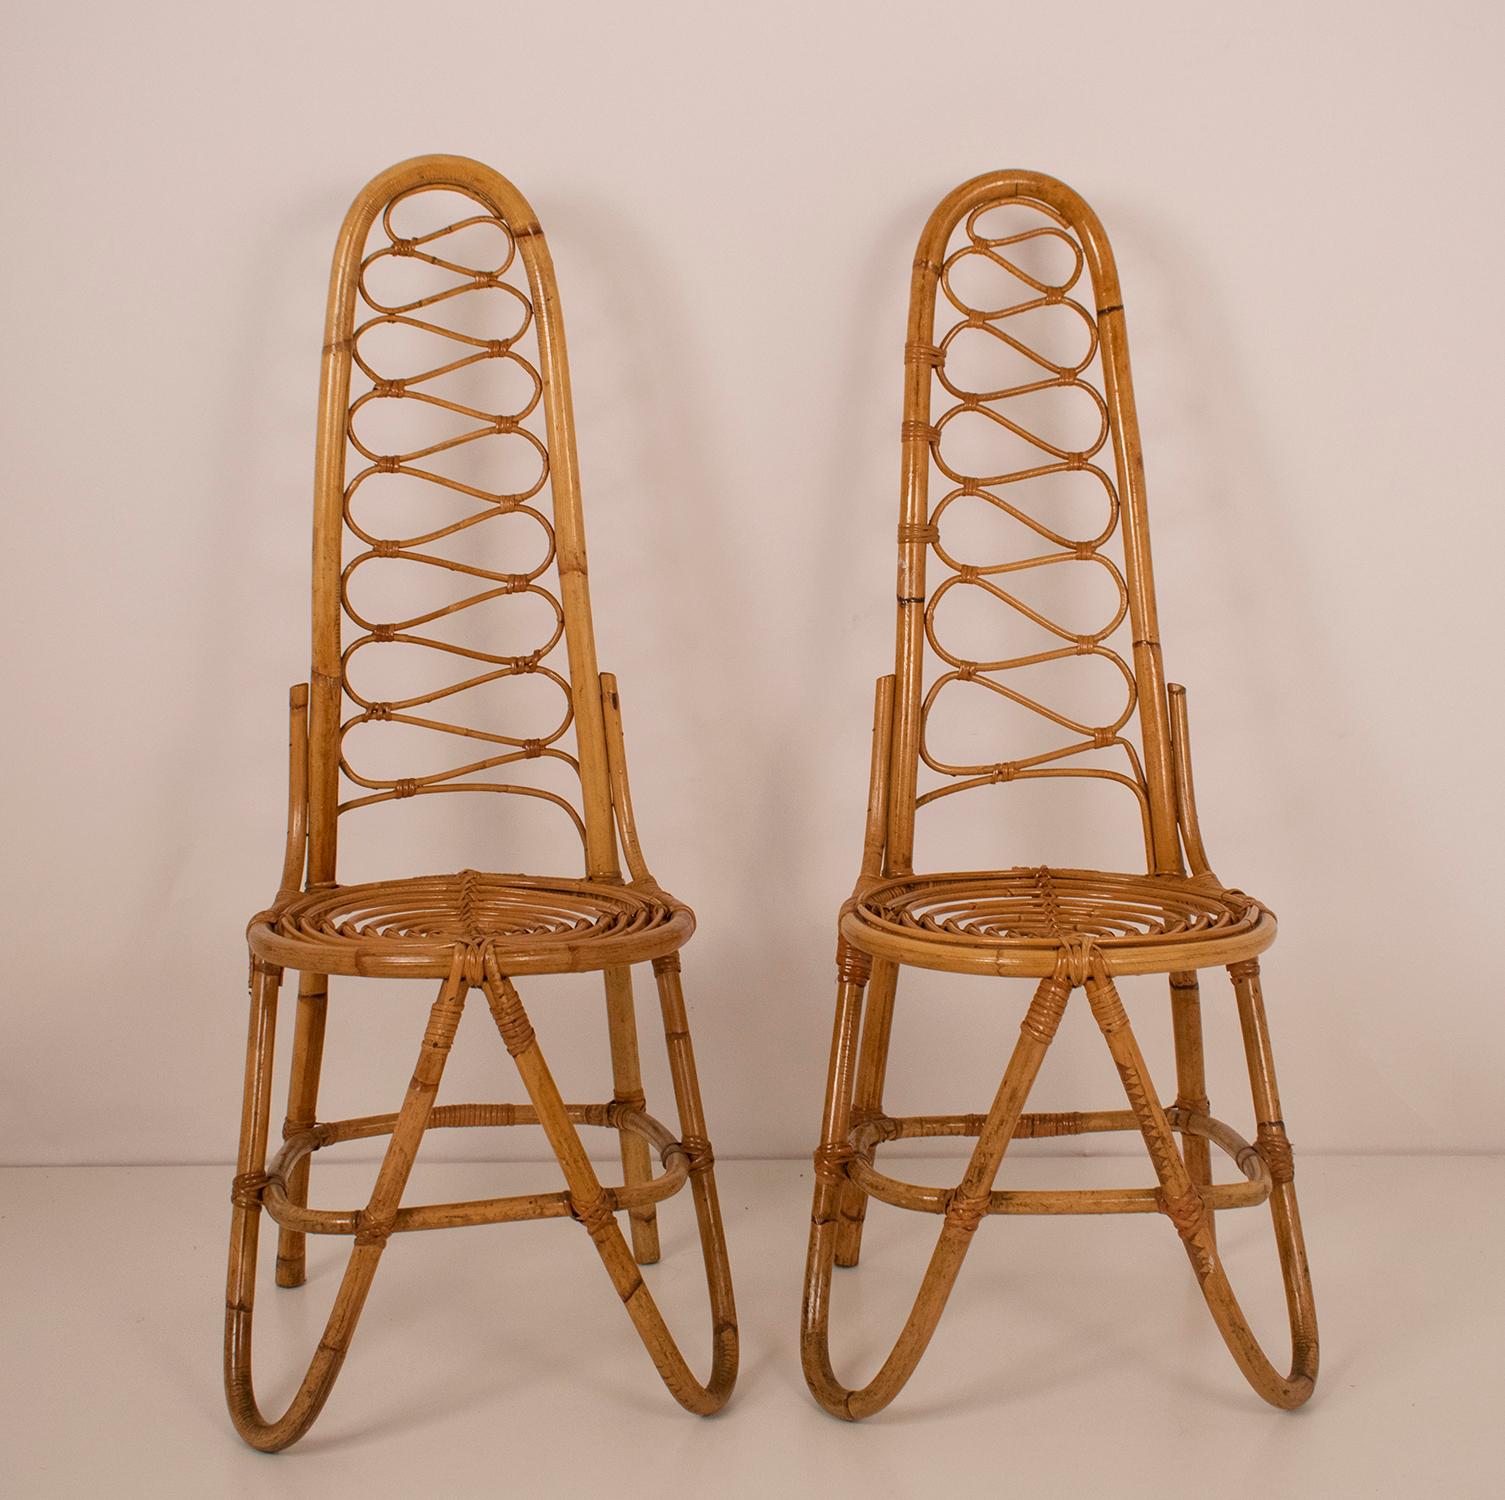 Mid-20th Century Bamboo Chairs by Dirk Van Sliedrecht for Rohe Noordwolde, 1950